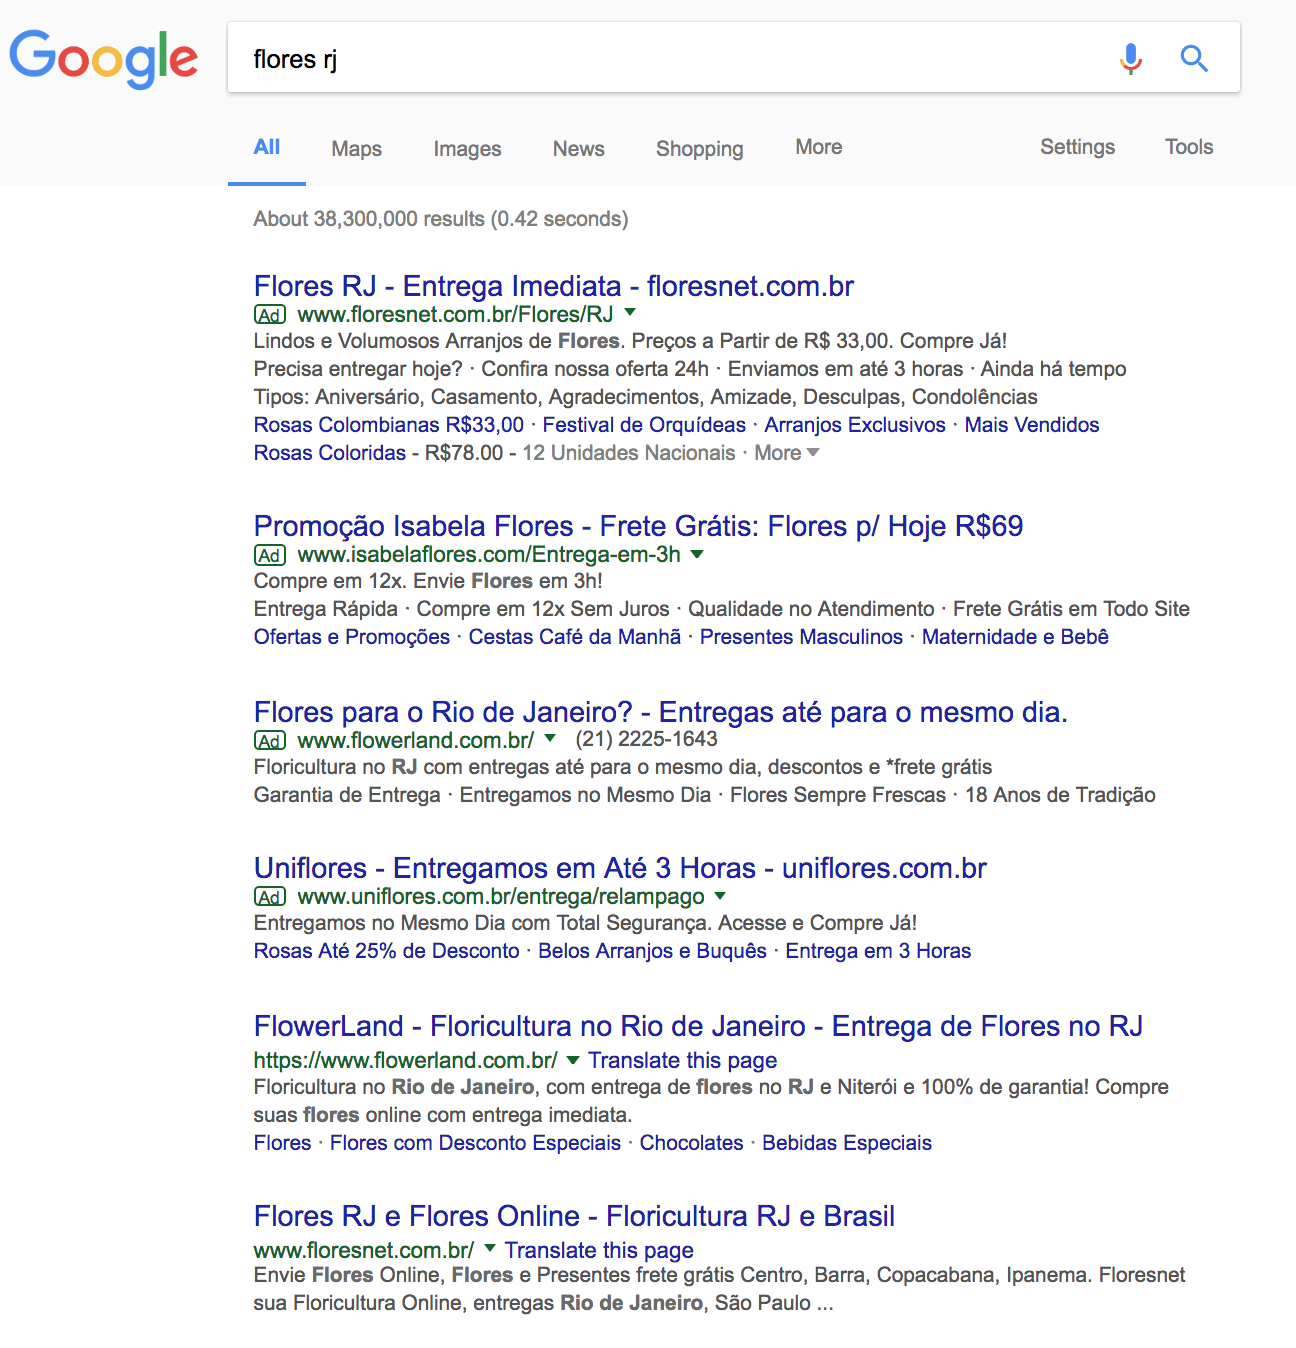 Resultado de busca no google